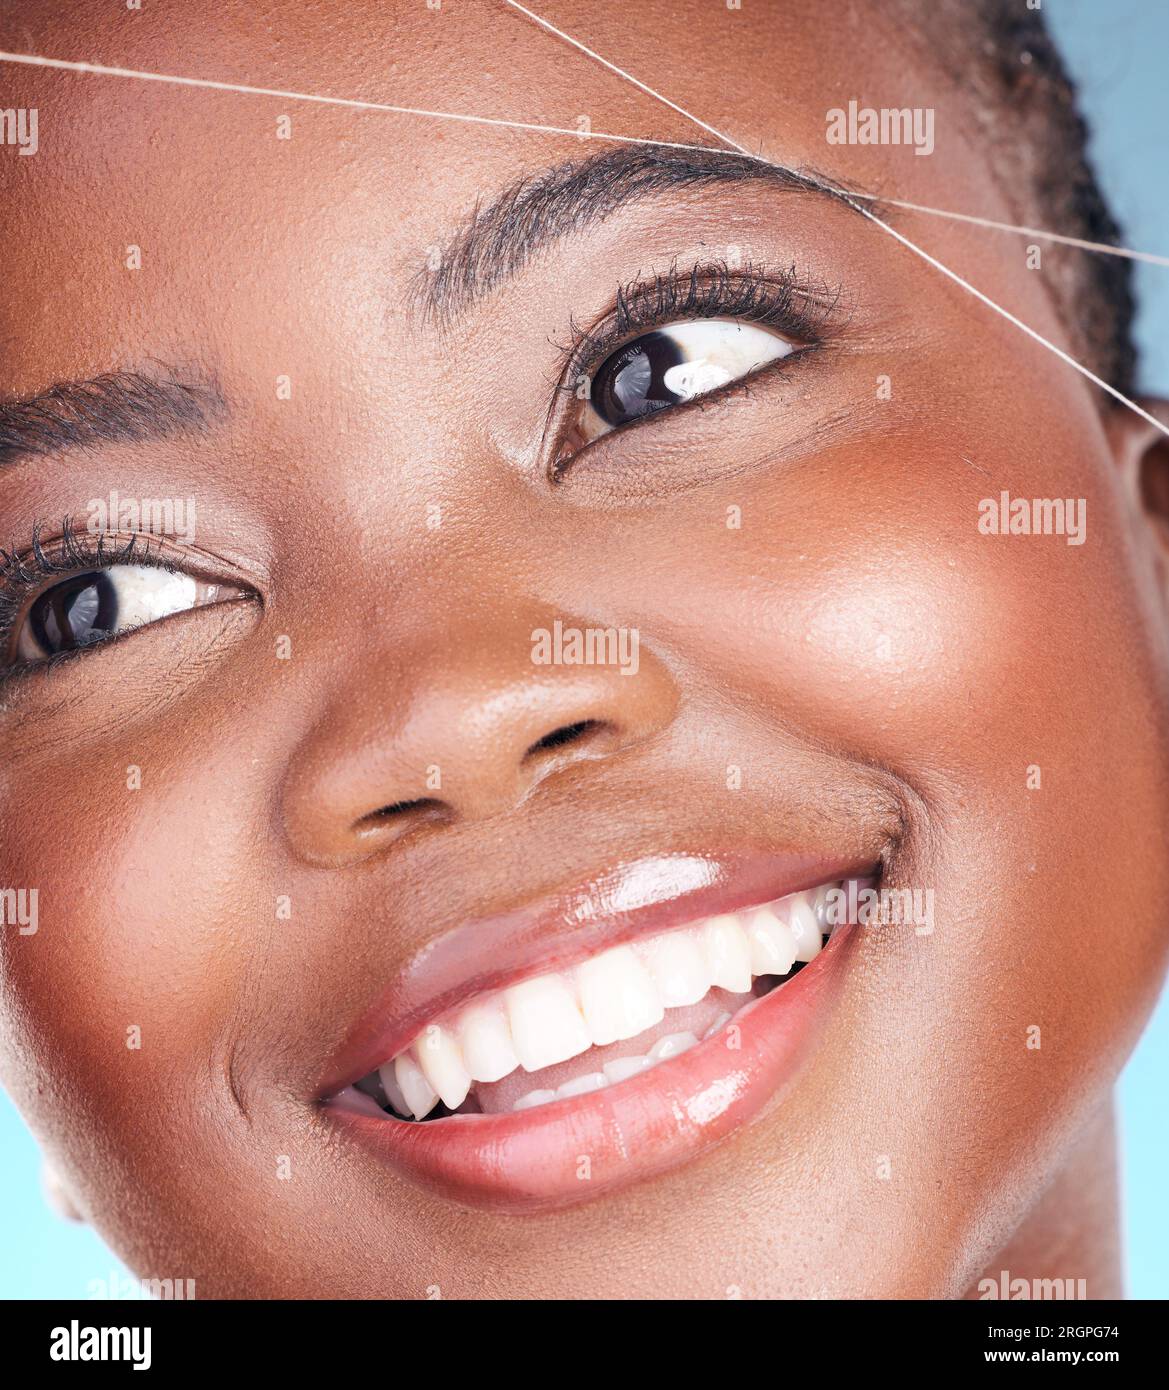 Fil, épilation des sourcils et beauté d'une femme avec dermatologie,  maquillage naturel et sourire. Visage d'une personne africaine sur un fond  de studio avec Photo Stock - Alamy